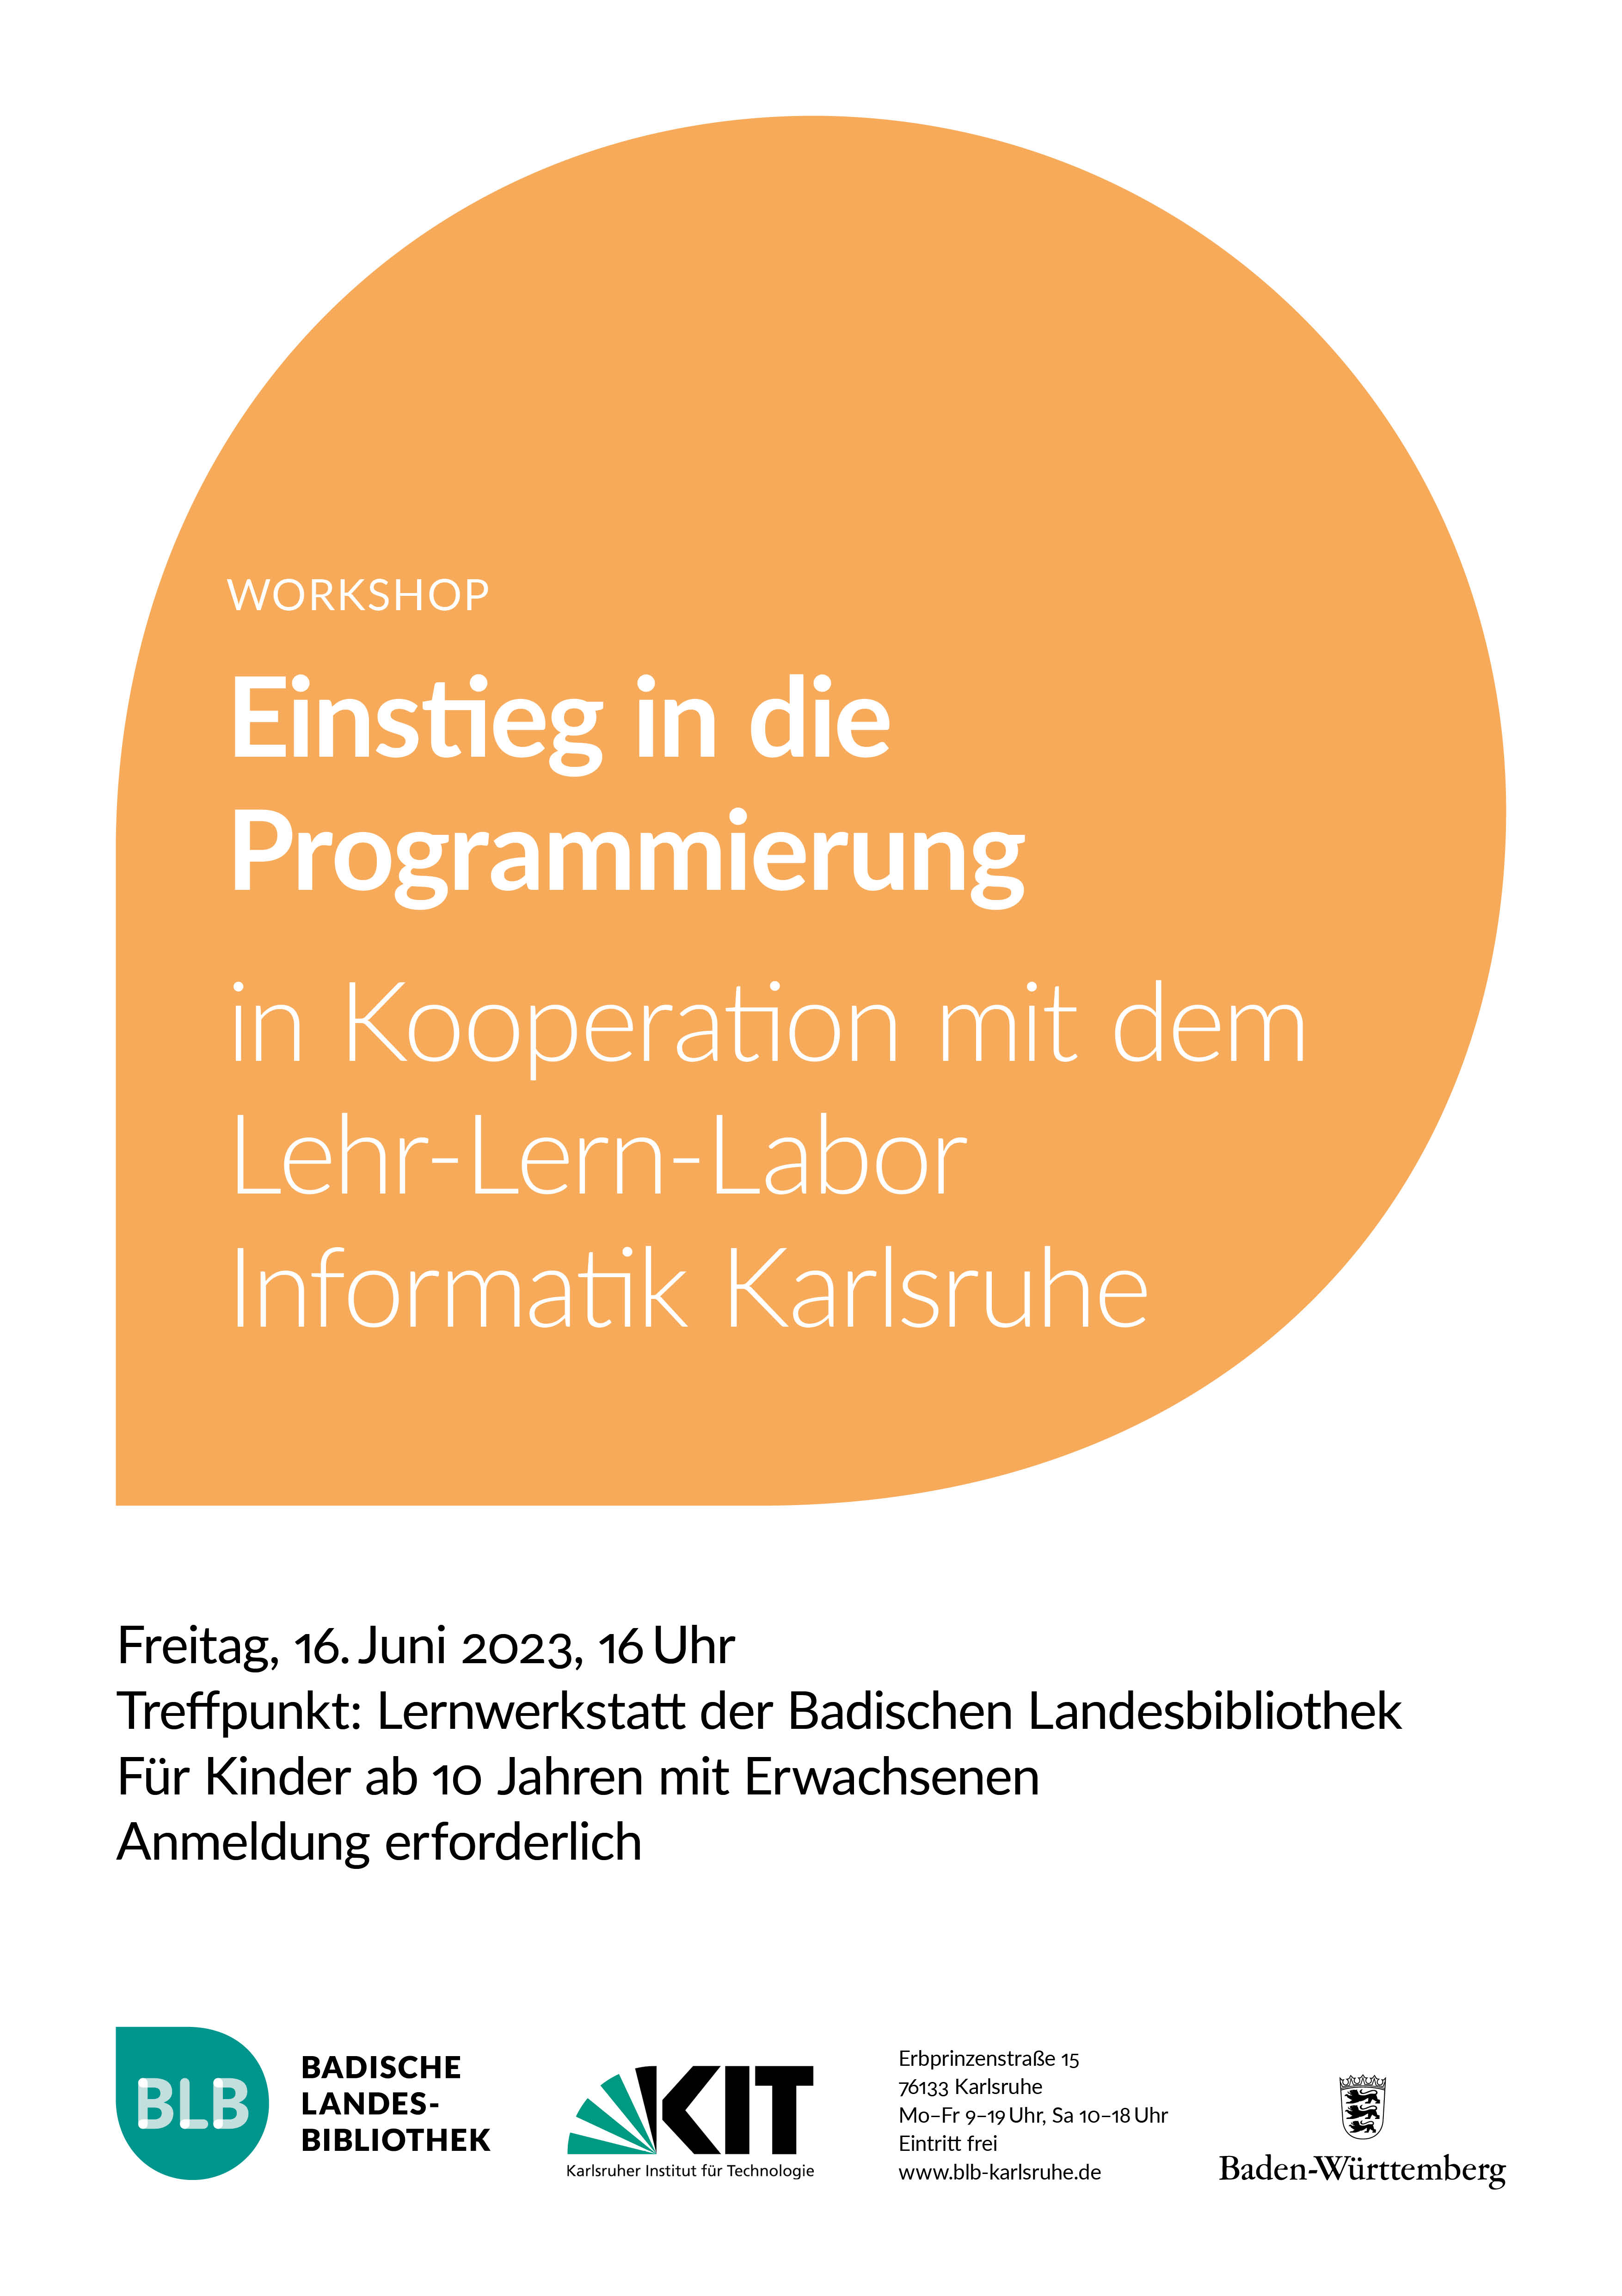 Zu sehen ist ein orangefarbenes Monogon mit der Aufschrift "Einstieg in die Programmierung." Der Workshop findet am Freitag, dem 16. Juni 2023 um 16 Uhr in Kooperation mit dem Lehr-Lern-Labor Informatik Karlsruhe statt.